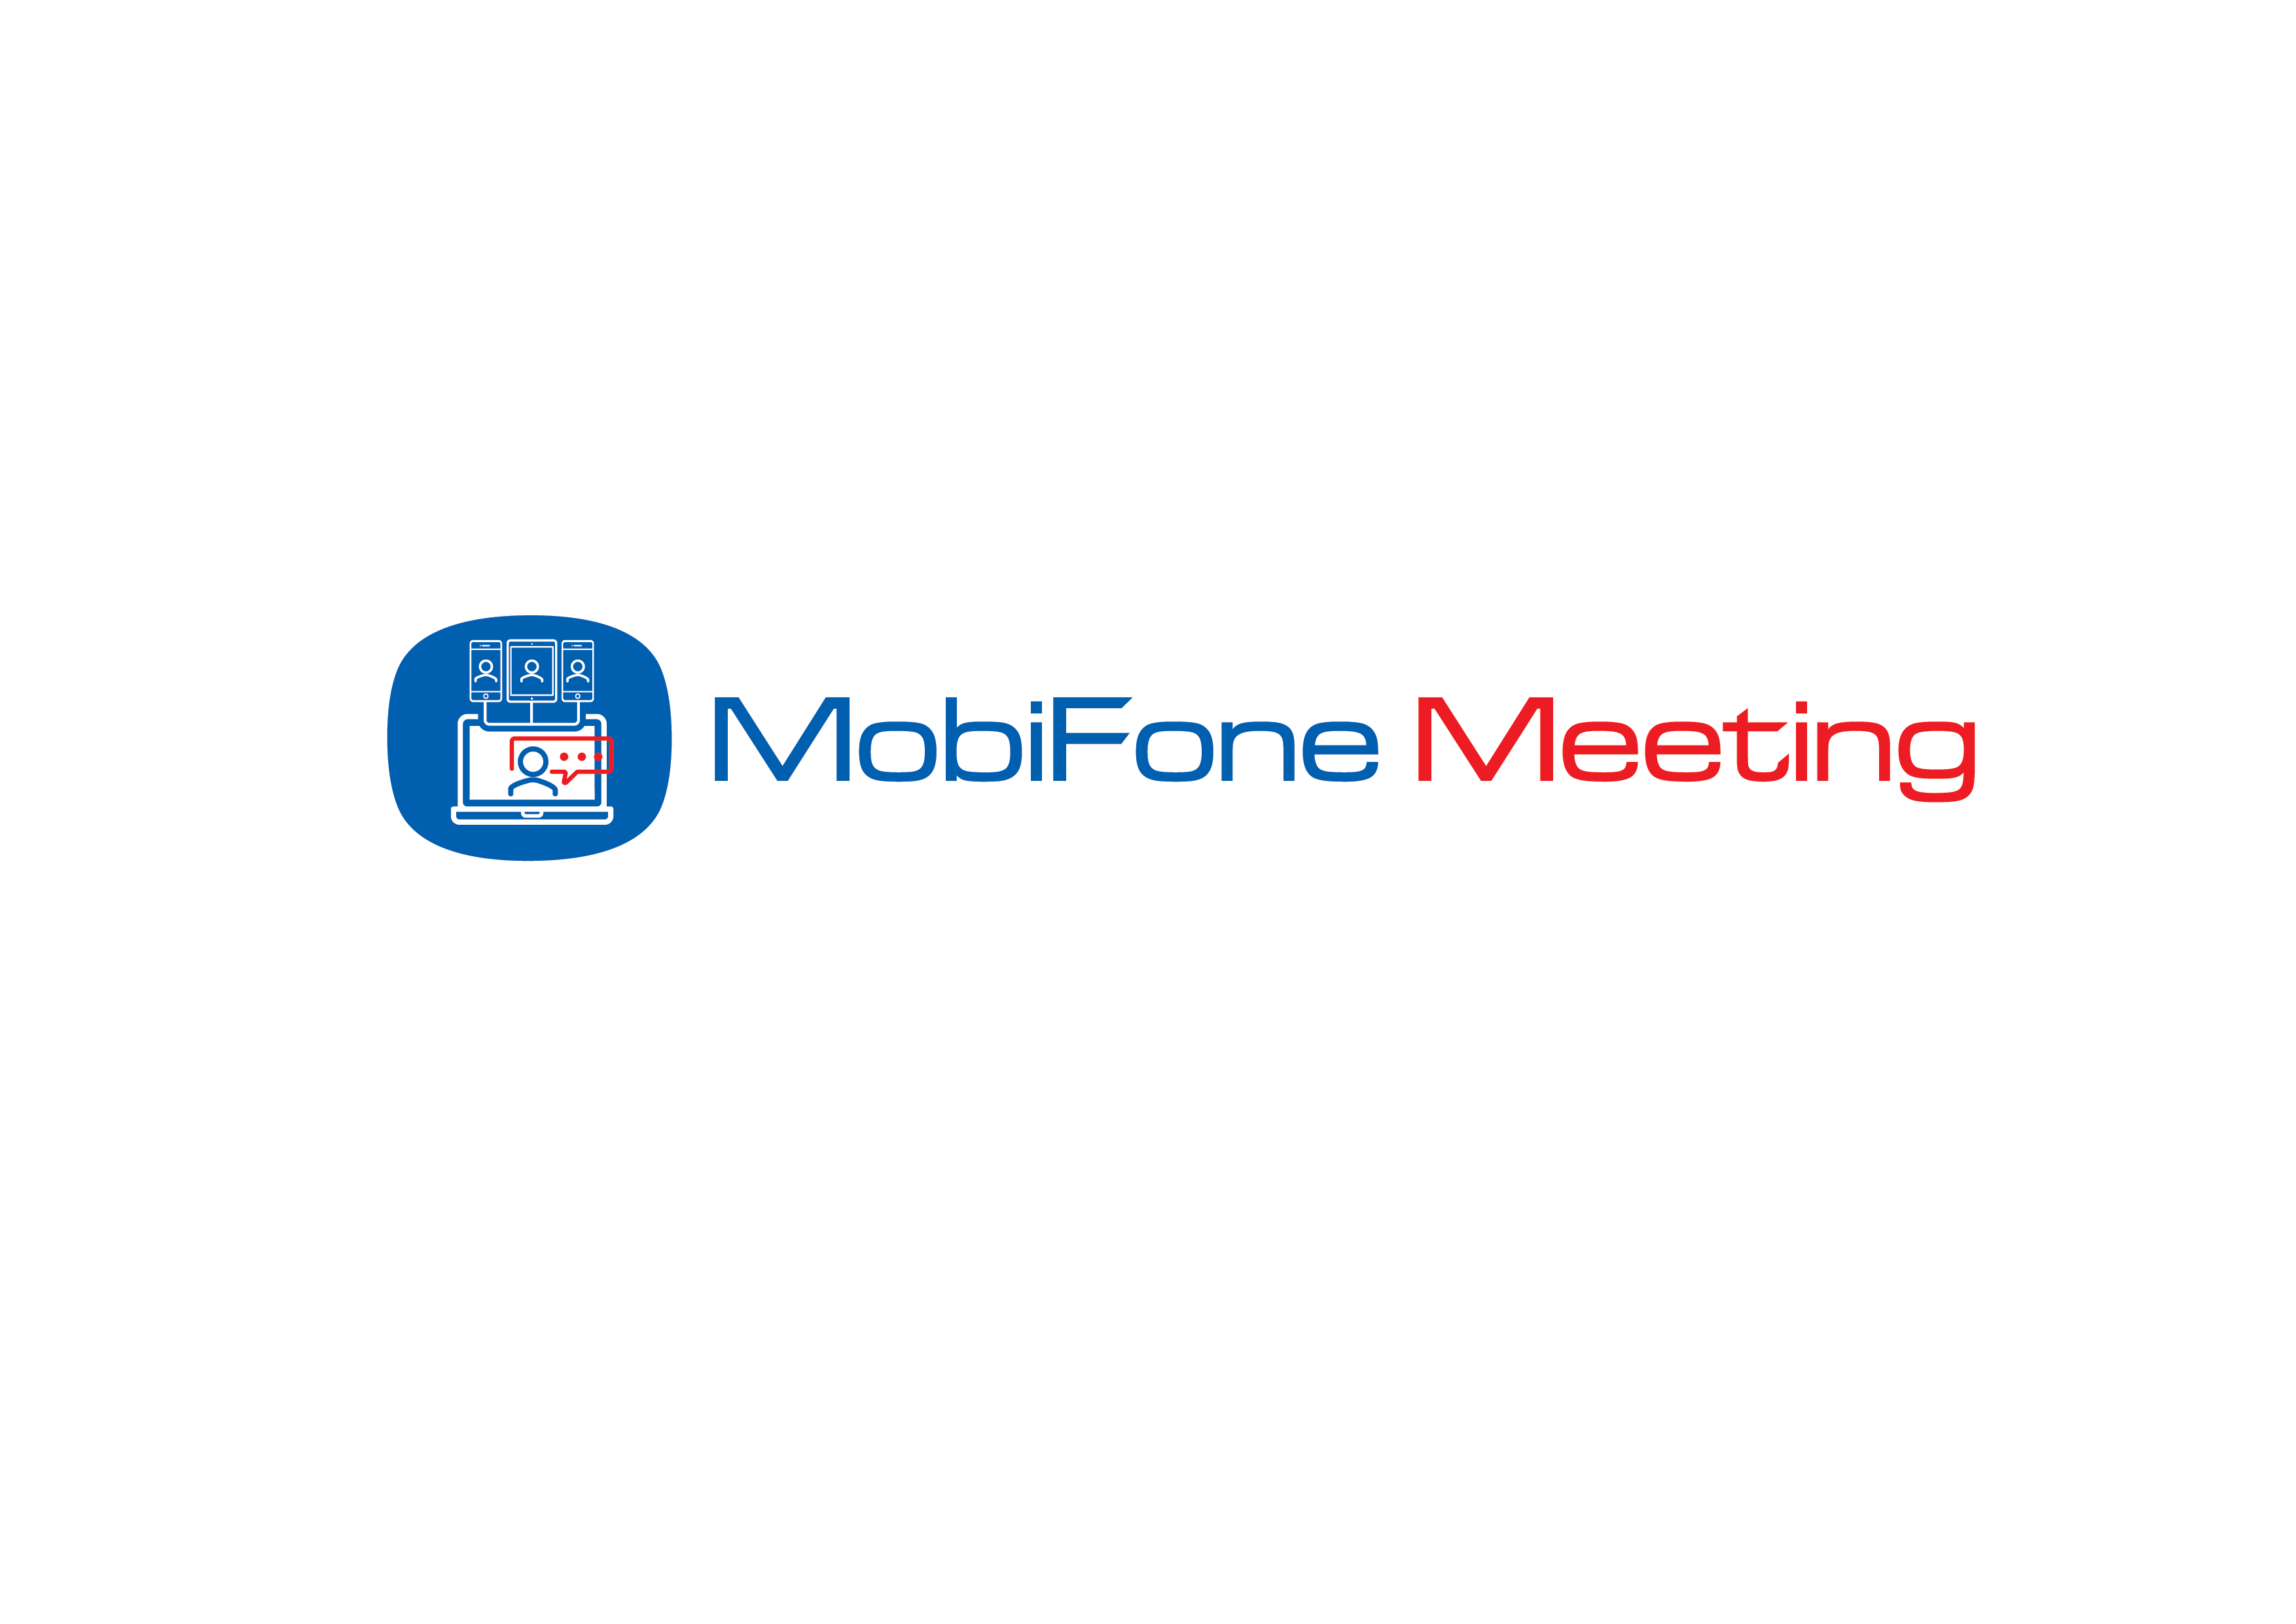 MobiFone Meeting - Giải pháp Hội nghị truyền hình trực tuyến